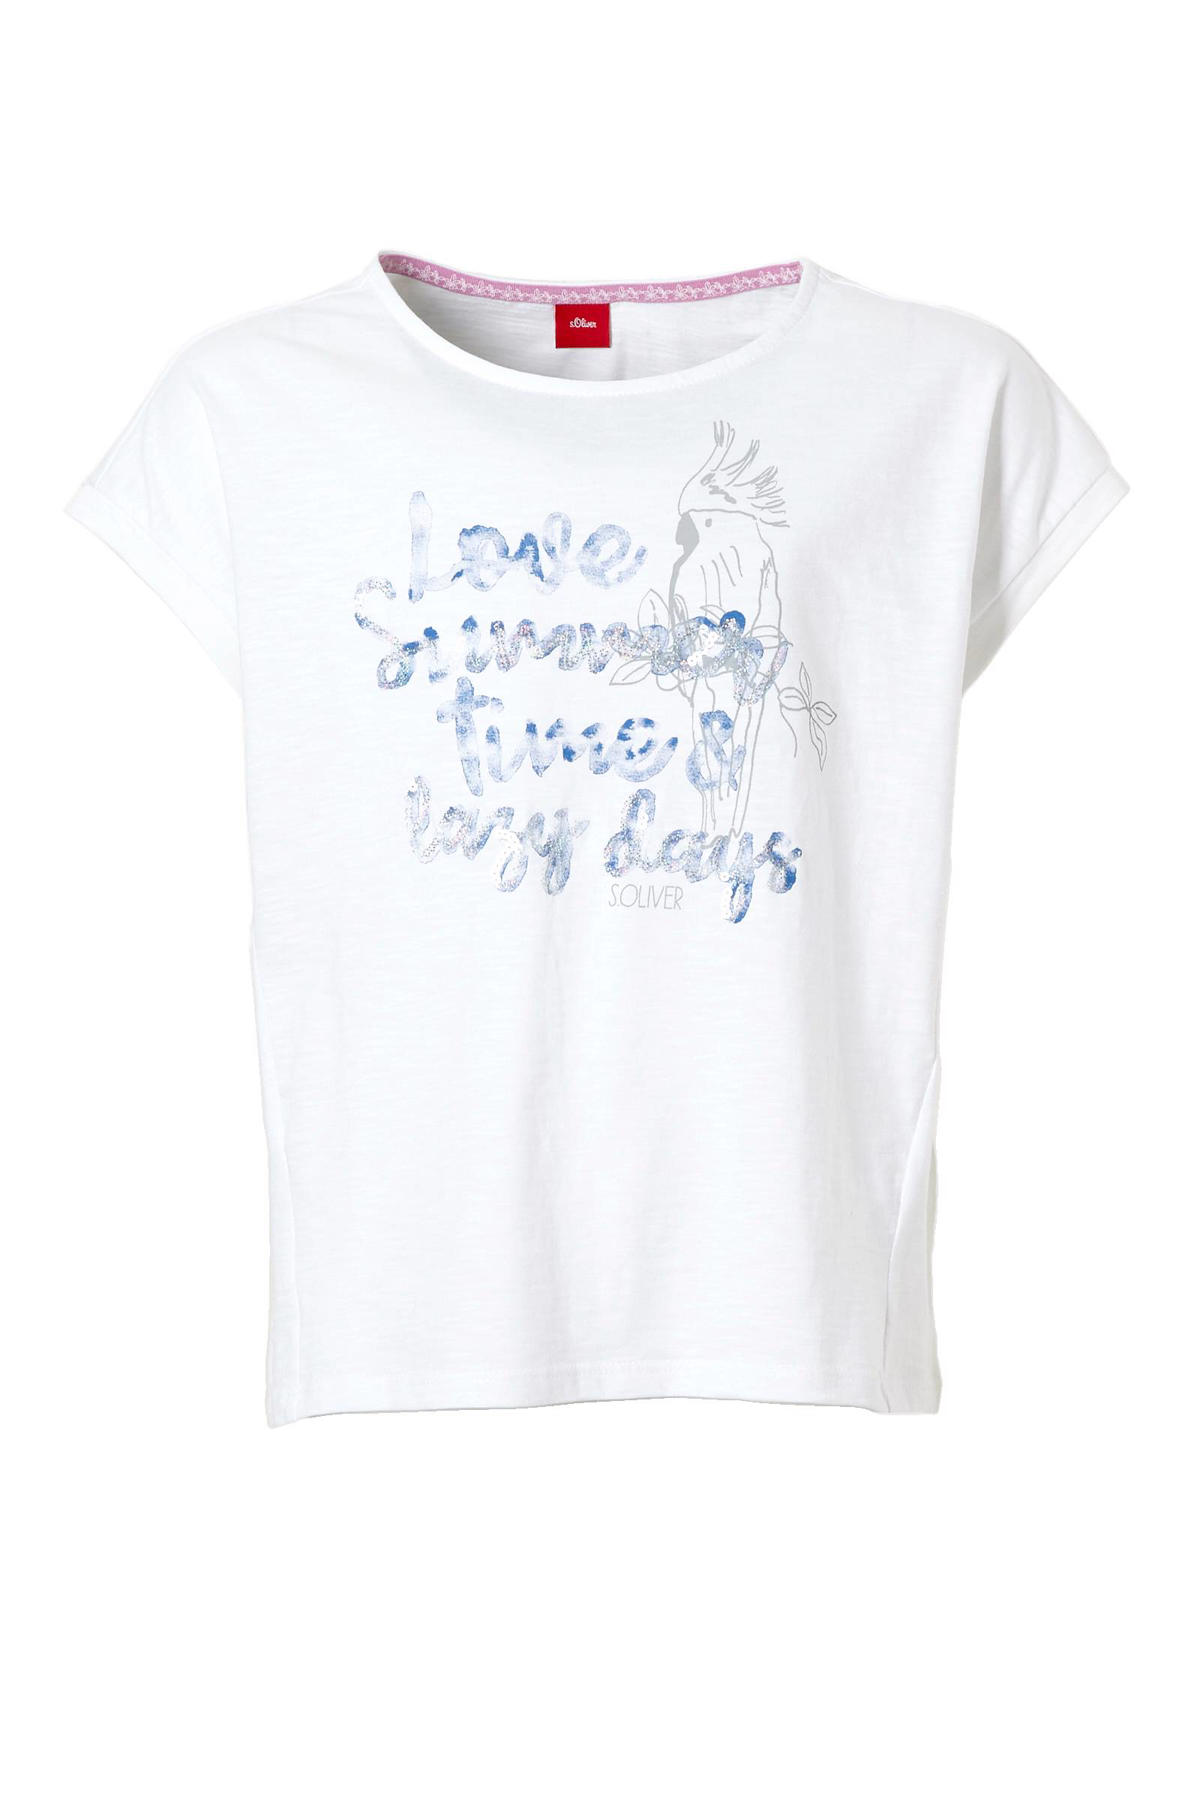 Op maat vorm Zelfrespect s.Oliver T-shirt met pailletten wit/blauw/zilver | wehkamp